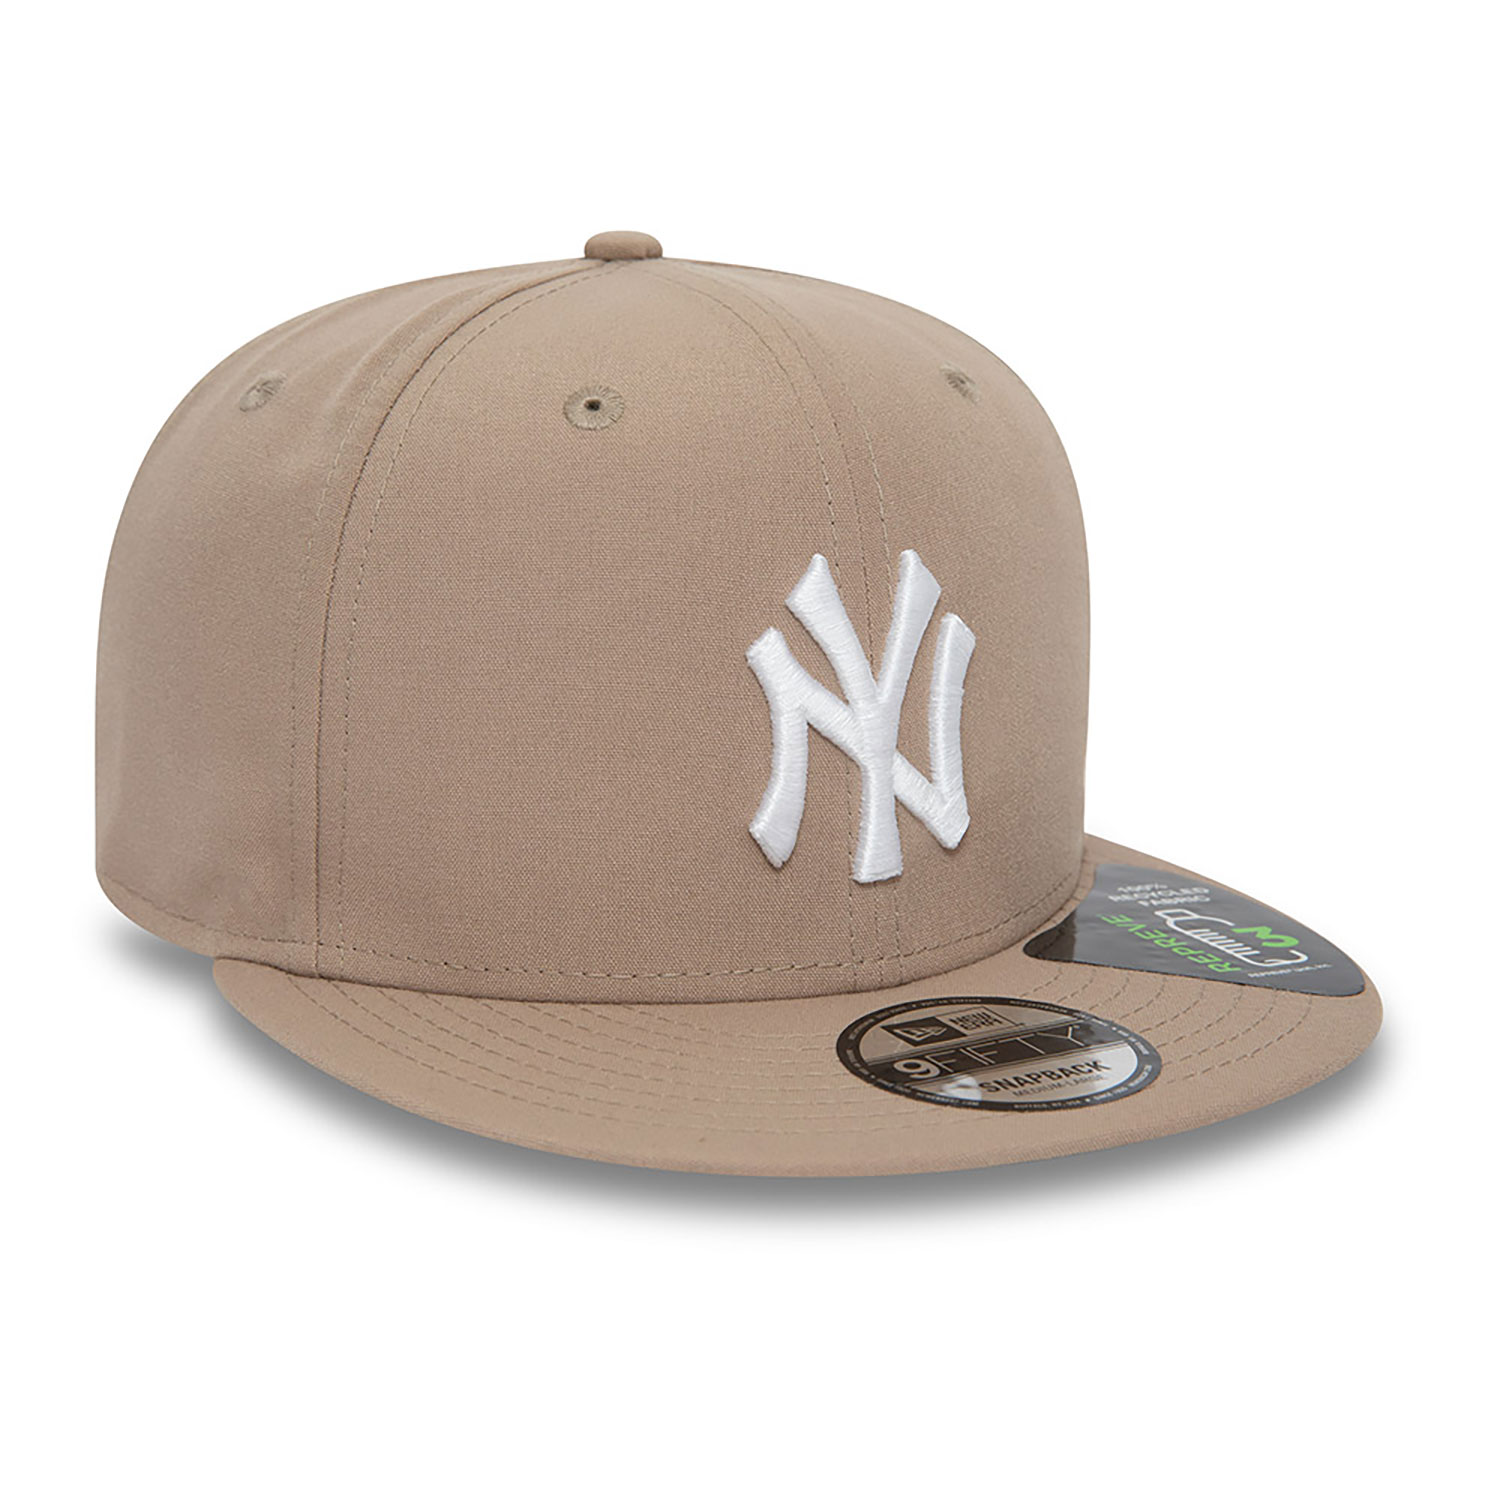 New York Yankees MLB Repreve Brown 9FIFTY Adjustable Cap